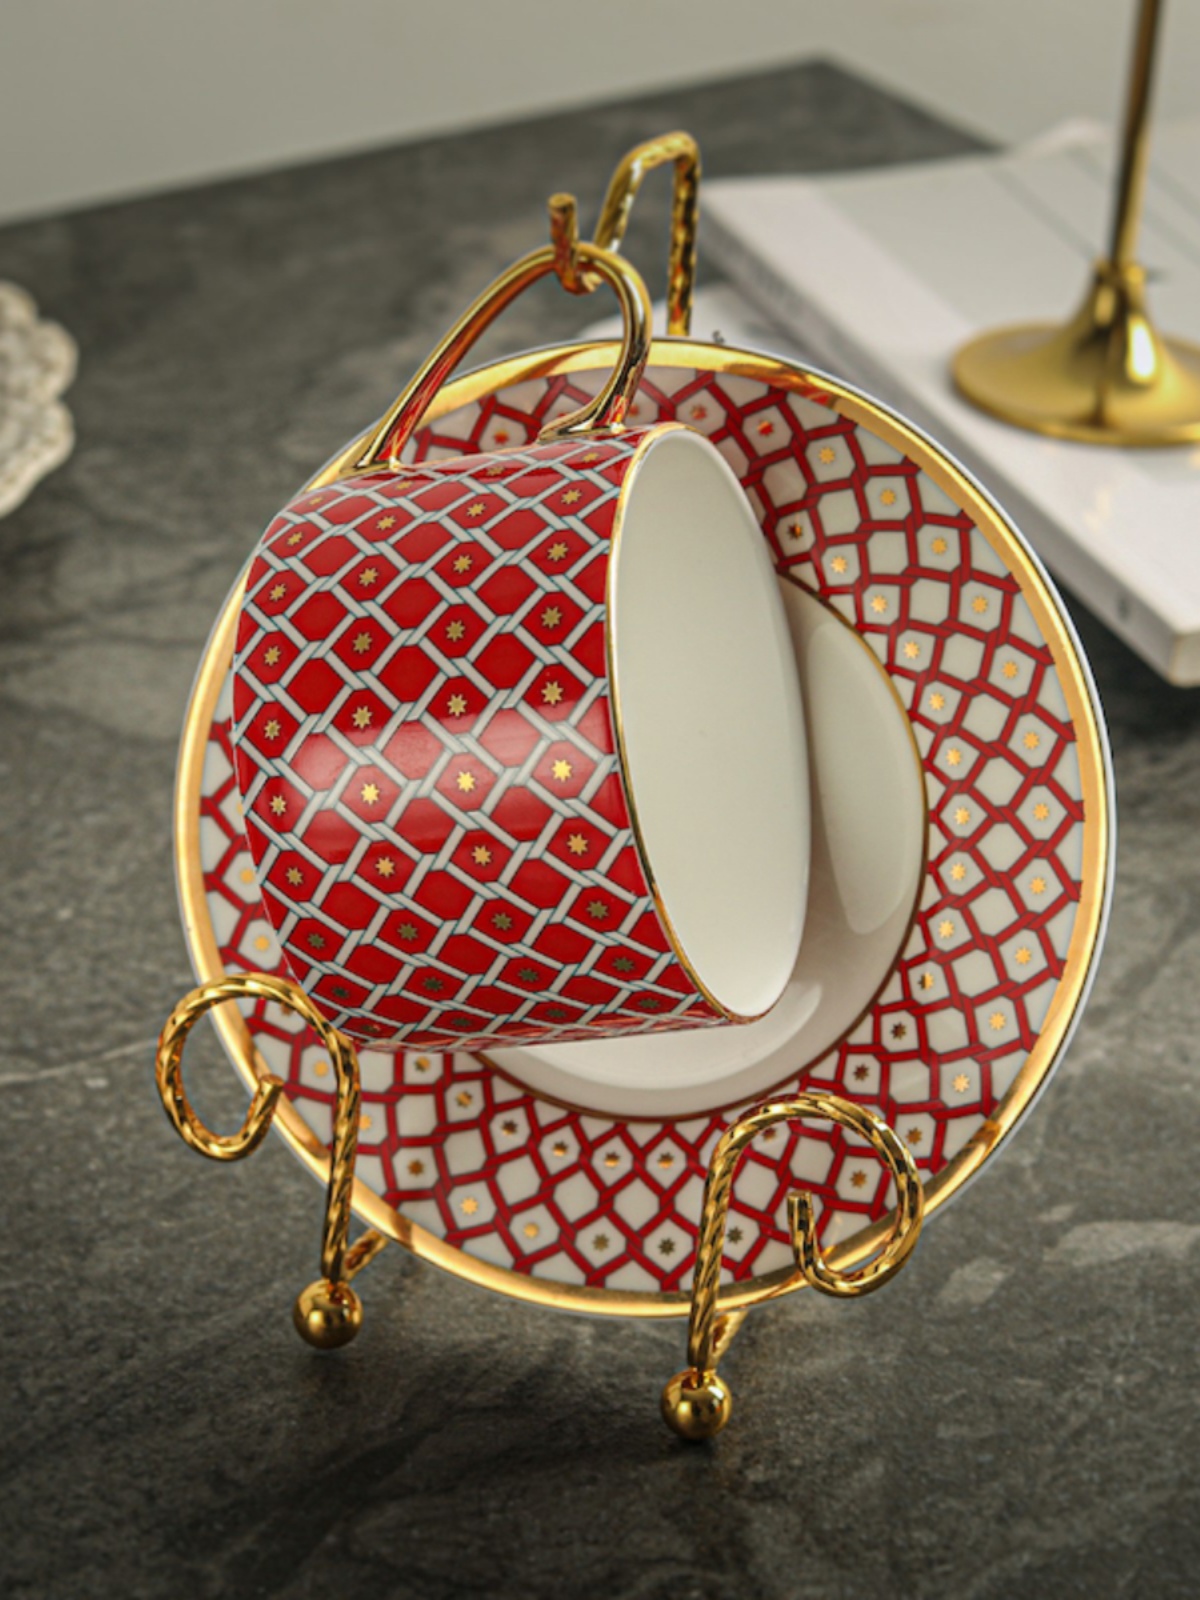 金色單套咖啡杯碟杯架 英倫復古風北歐風格置物用品